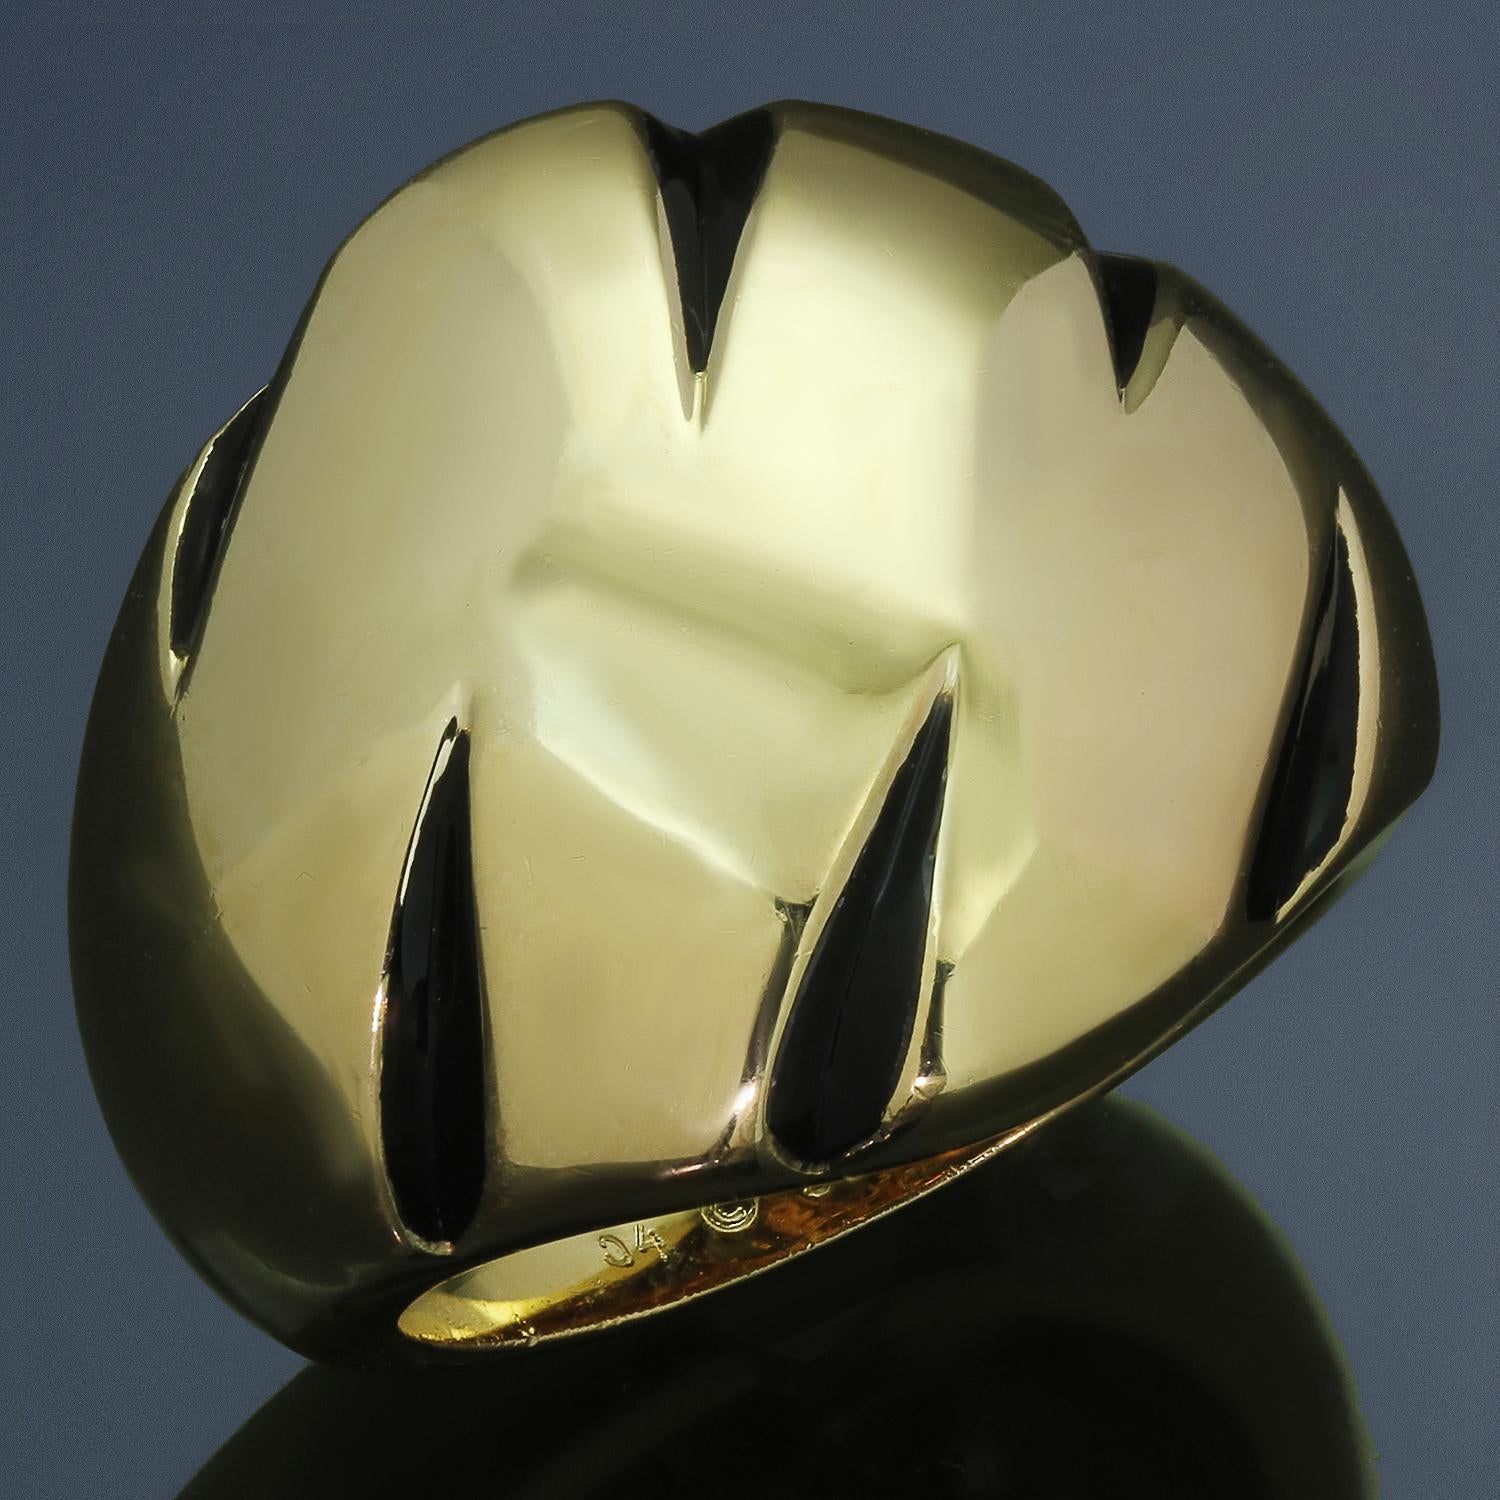 Cette superbe bague authentique de Cartier, issue de la chic collection Panthere Claws, est réalisée en or jaune 18 carats et rehaussée de marques de griffes en laque noire. Fabriqué en France dans les années 1990. Dimensions : 0,82